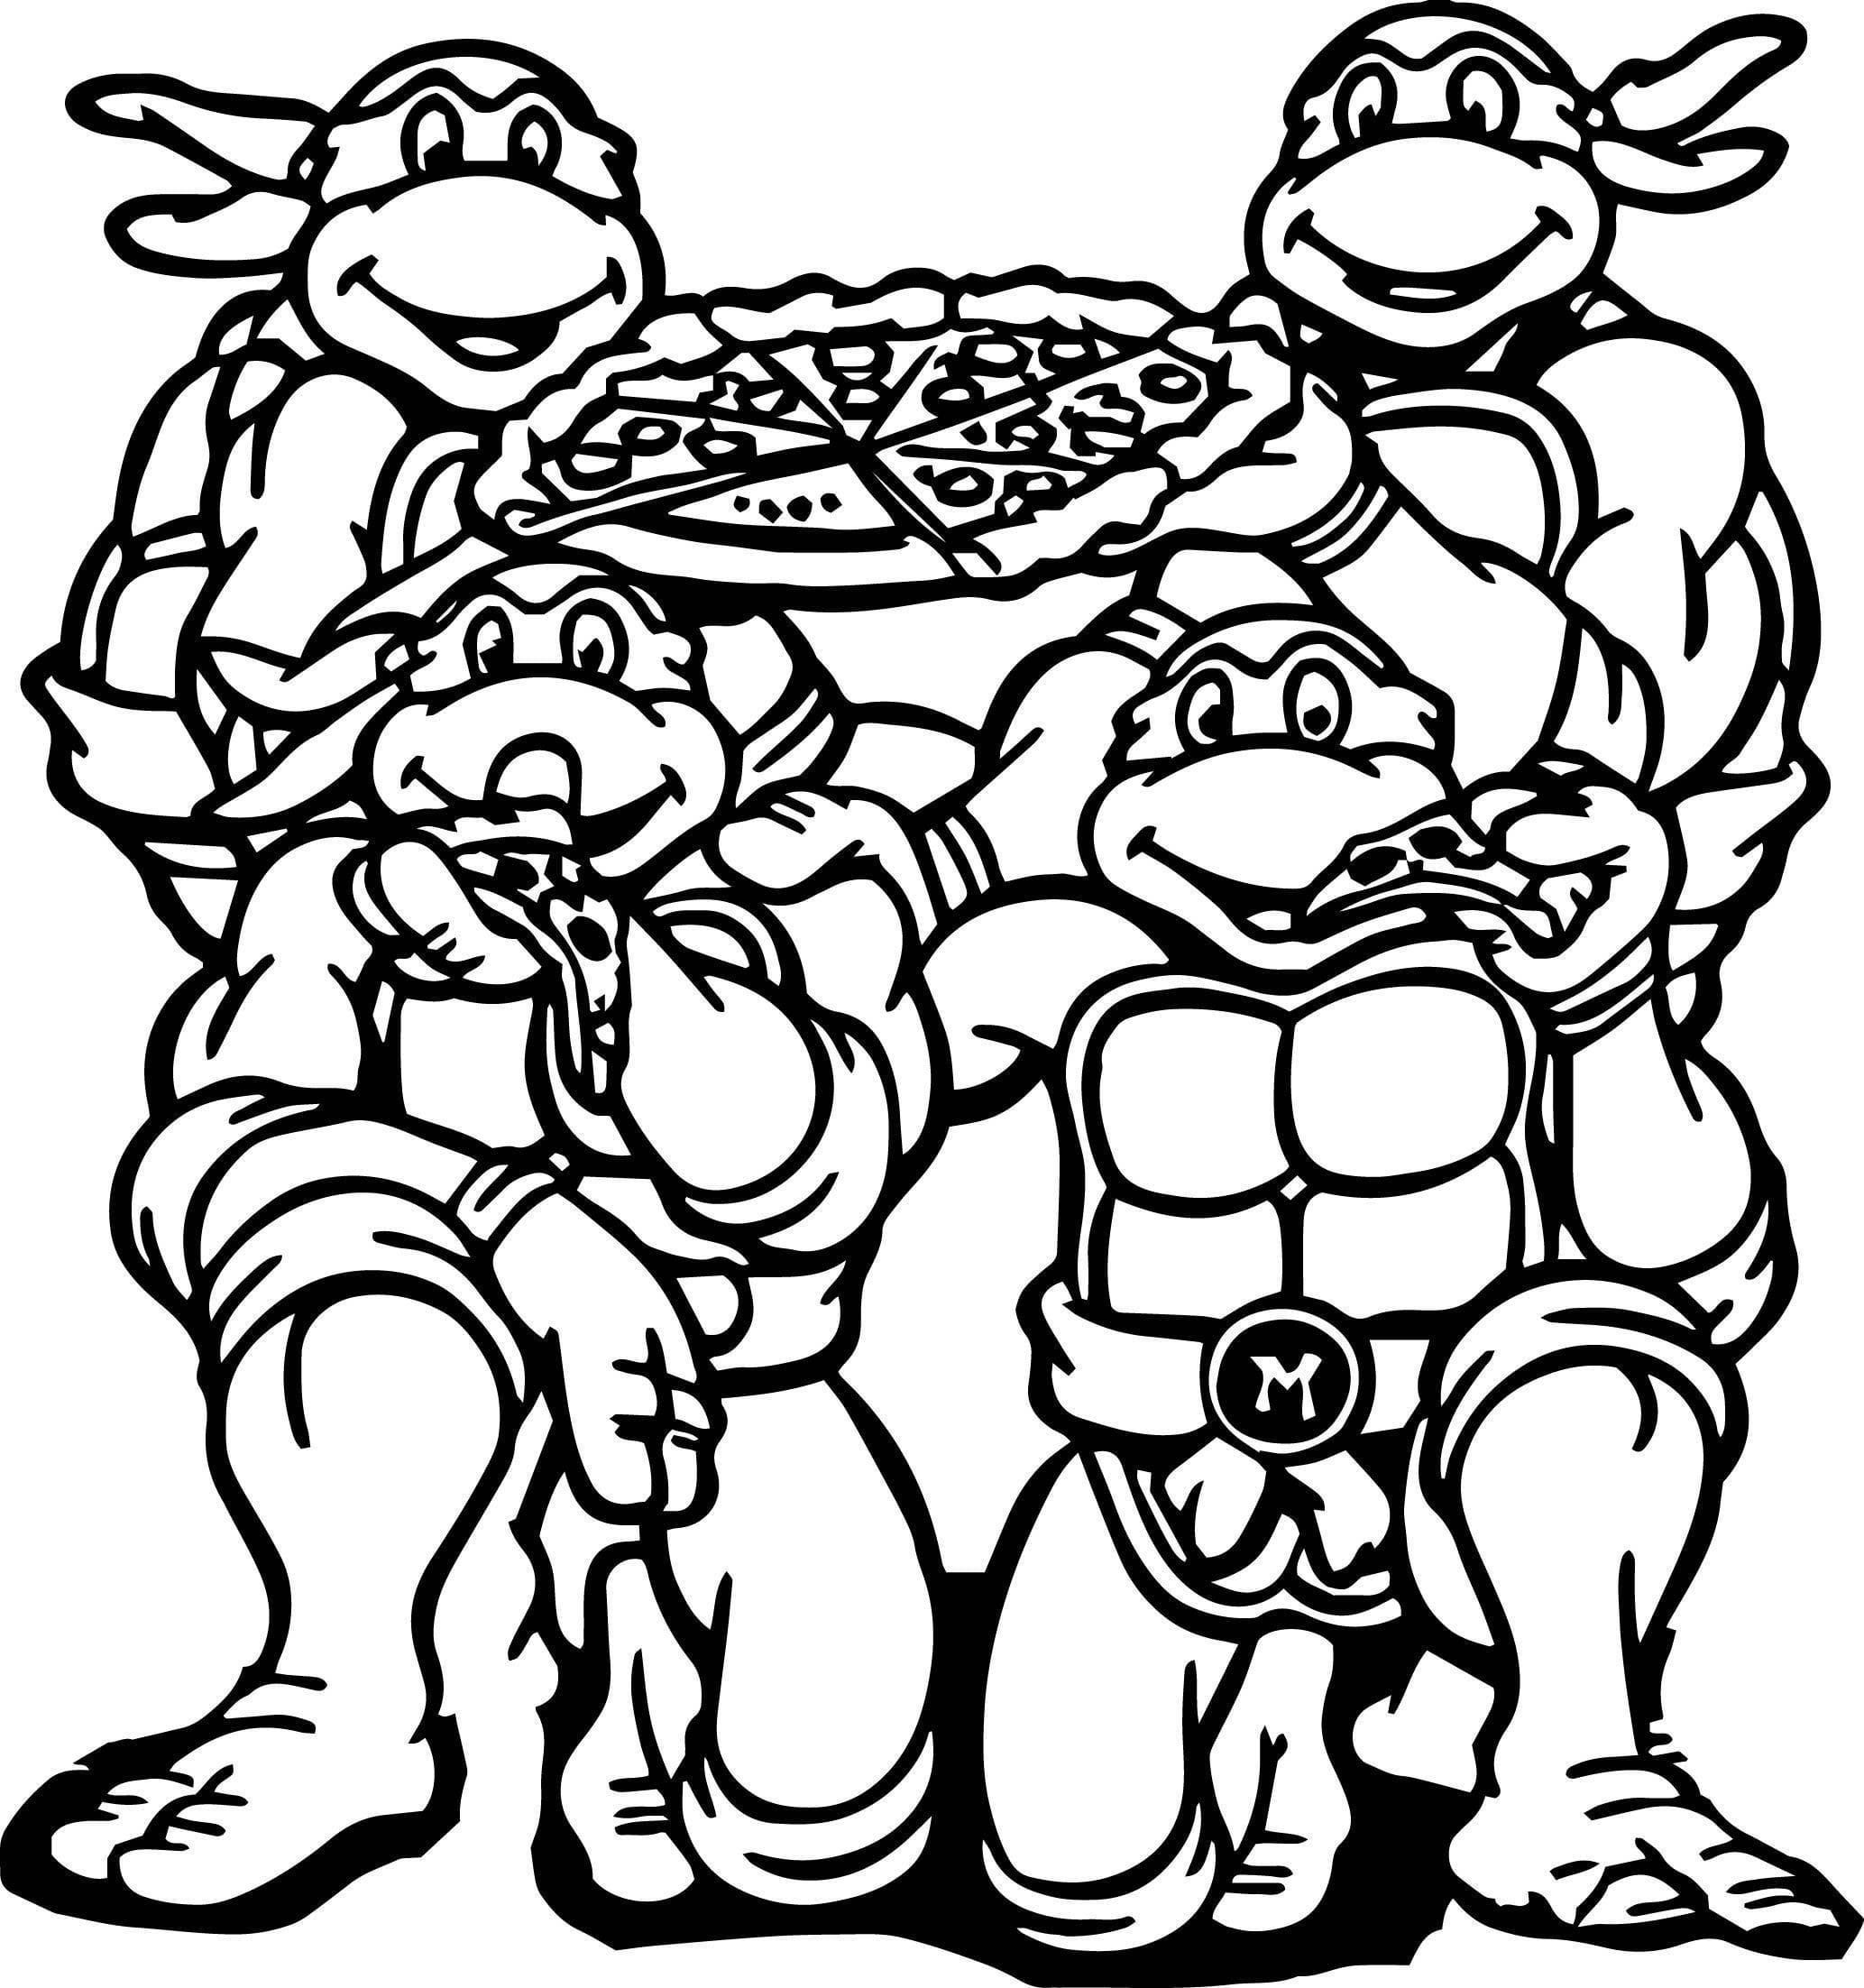 Ninja Turtles eten